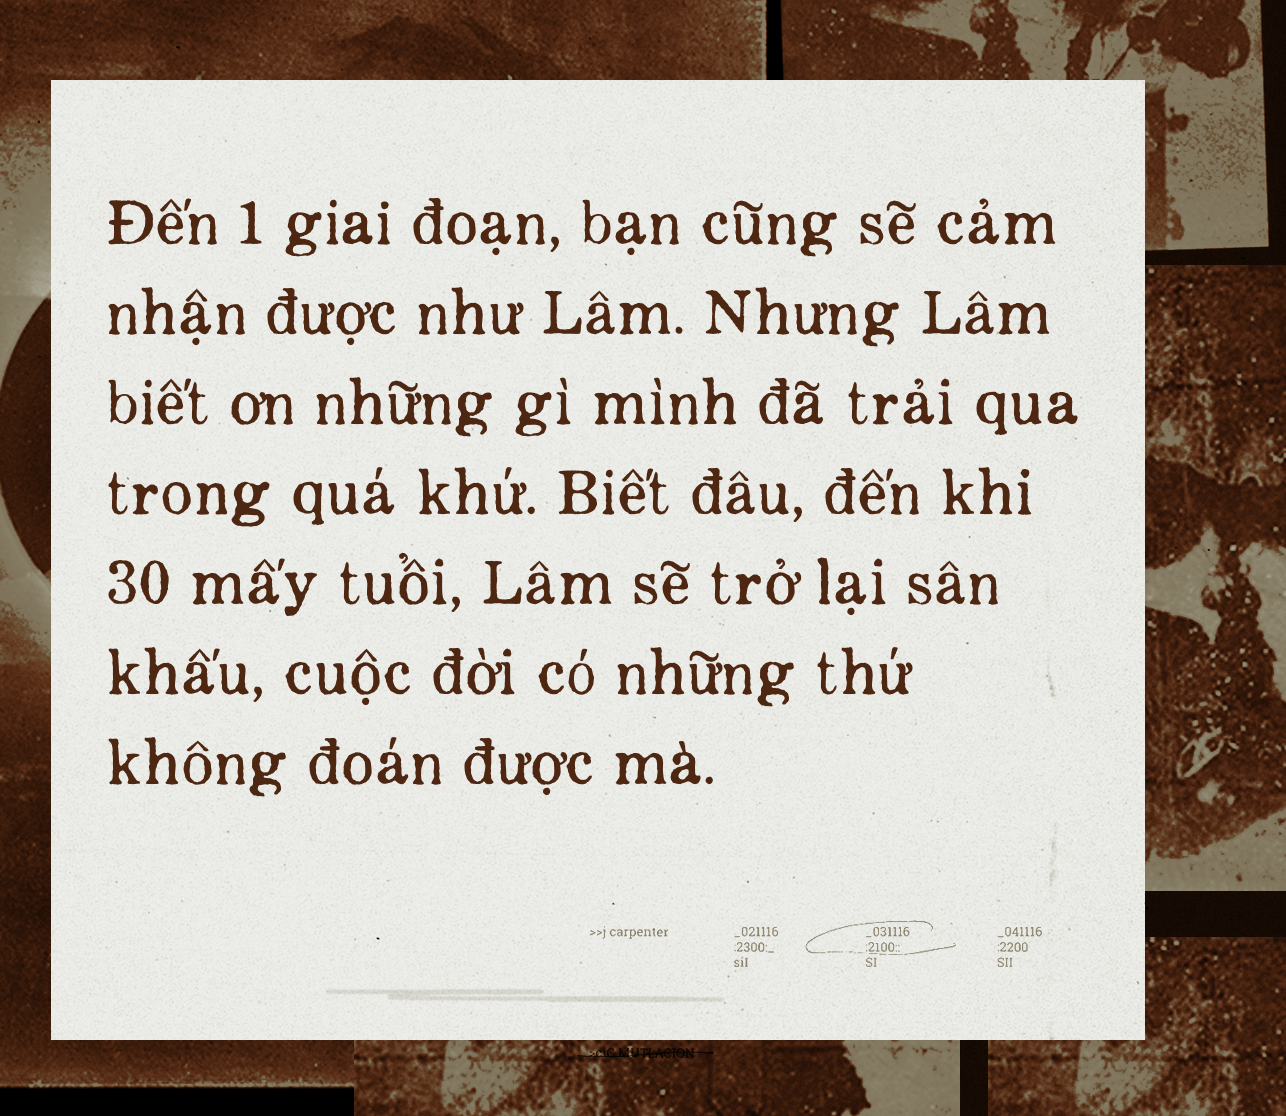 Hành trình 200km Sài Gòn - Vĩnh Long tìm Hoài Lâm: Đừng đặt kì vọng rằng Lâm sẽ trở lại, Lâm thấy ổn và hài lòng với cuộc sống thanh bình ở quê  - Ảnh 10.